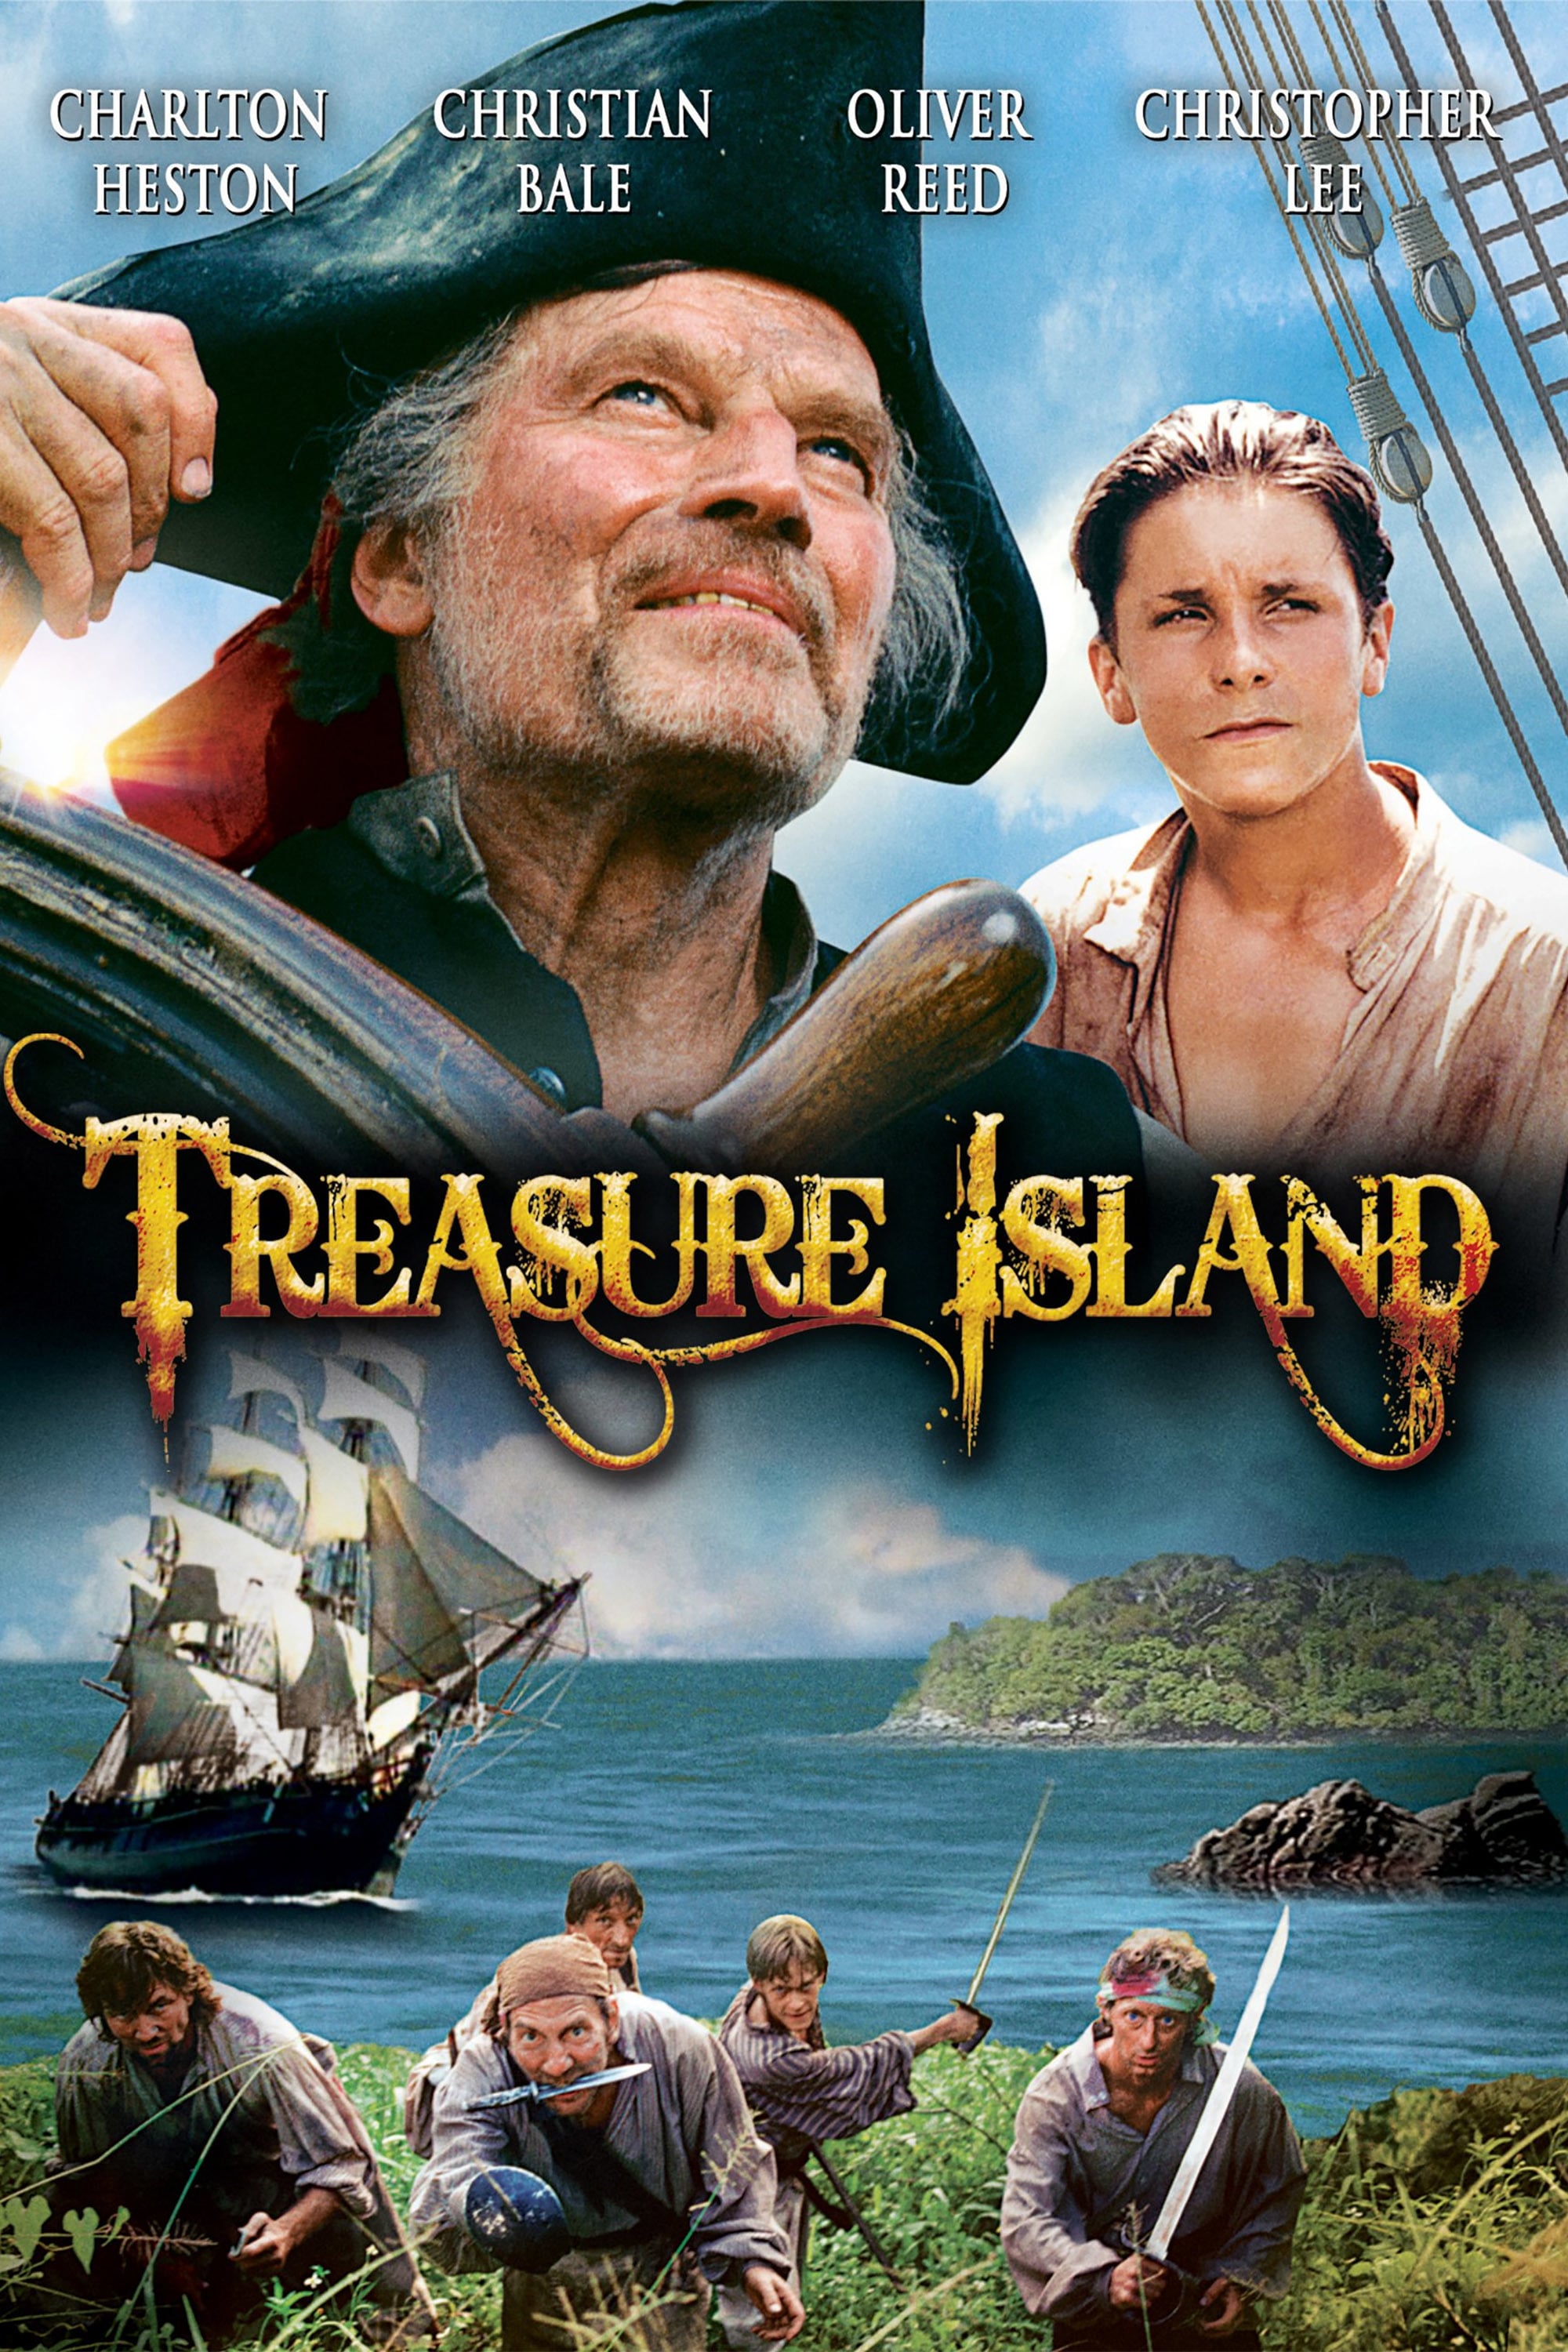 Зарубежные приключения 70. Кристиан Бейл остров сокровищ. Остров сокровищ / Treasure Island (1990). Остров сокровищ Чарлтон Хестон.